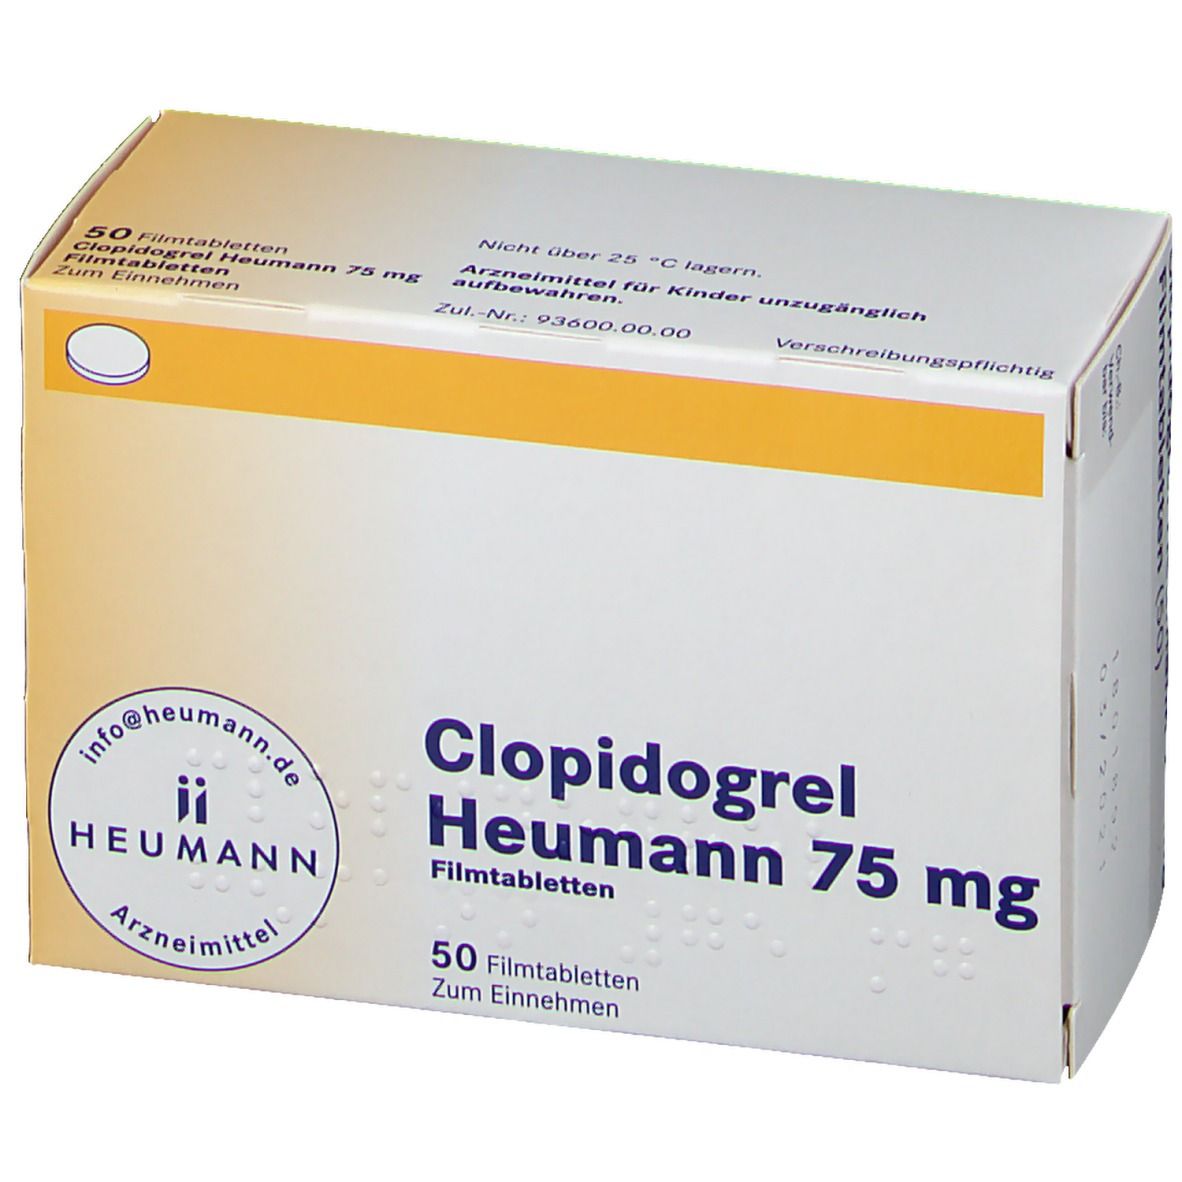 Clopidogrel Heumann 75 mg